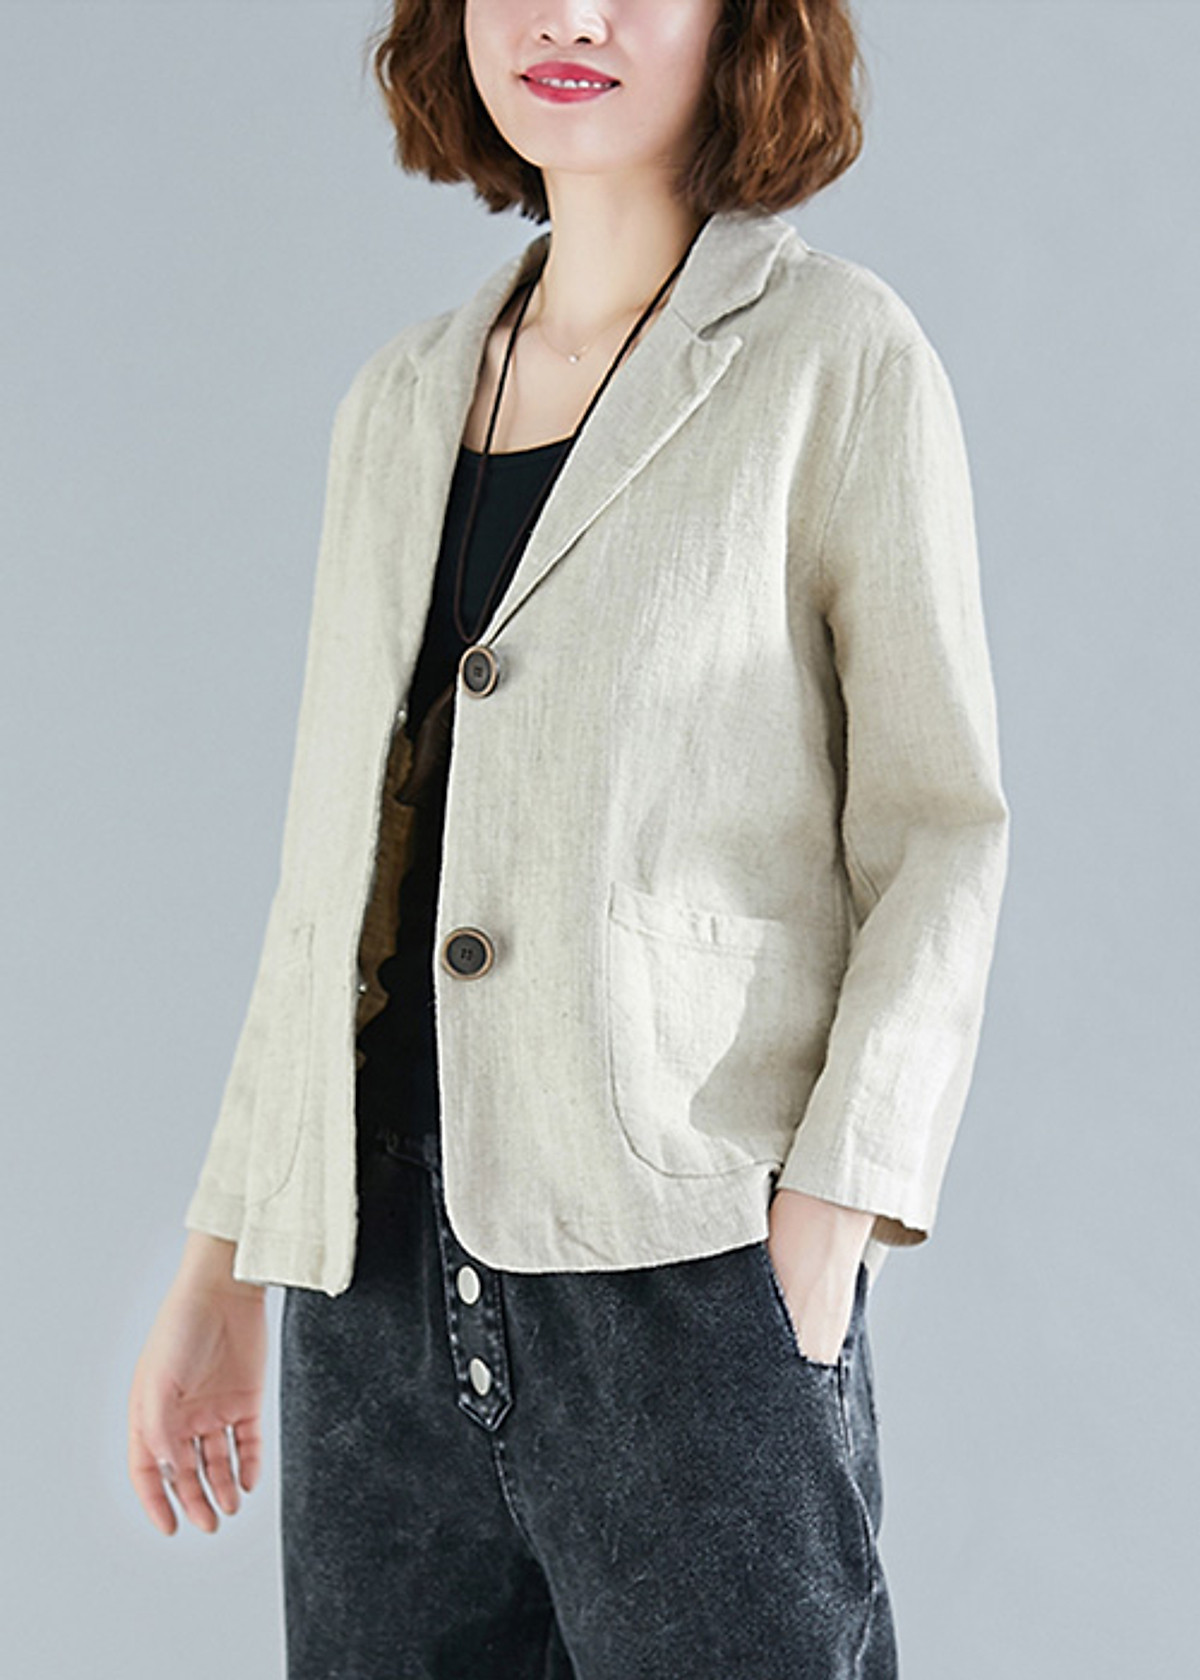 Áo vest Blazer Linen nữ 1 lớp chất vải linen mềm mại thời trang thu đông   Lazadavn